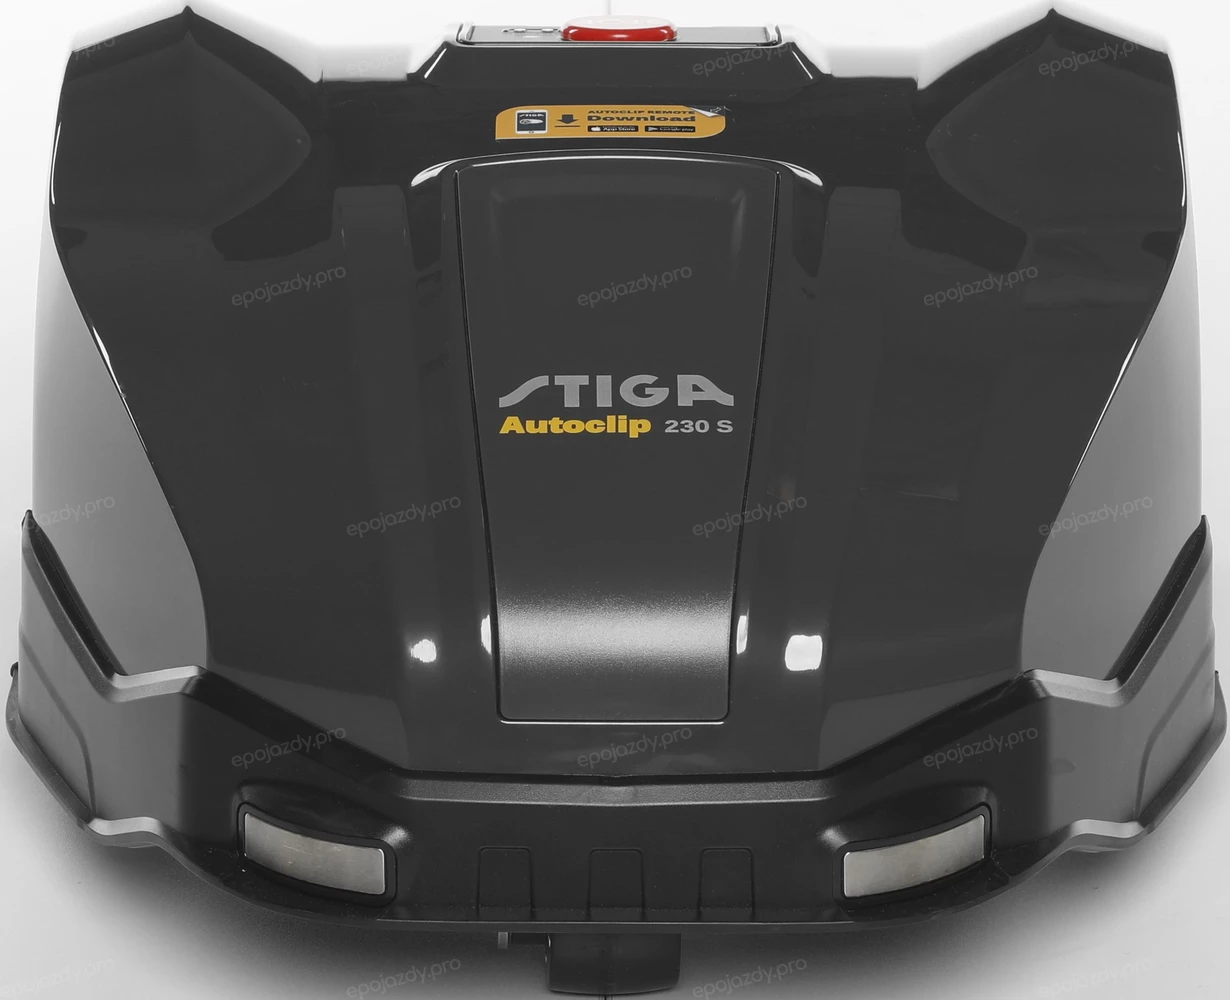 Robot koszący Stiga Autoclip 230 S jest idealny dla średniej wielkości trawników